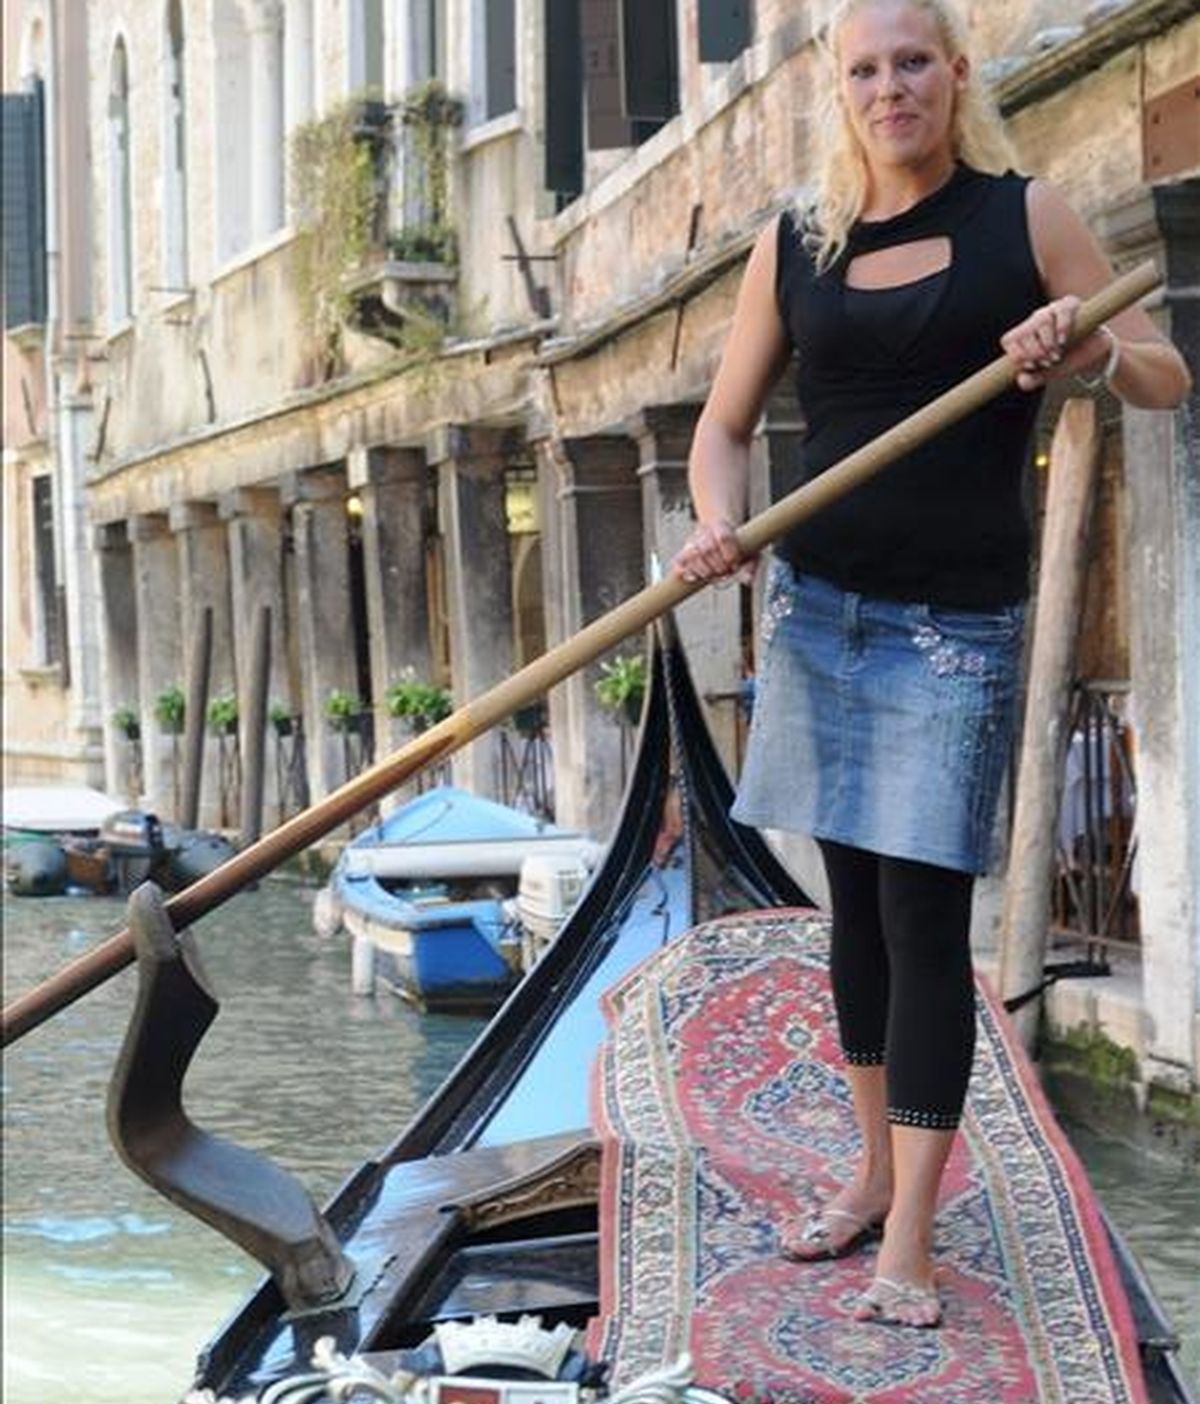 La italiana Giorgia Boscolo, de 23 años, primera "gondolera" veneciana, posa en una góndola en uno de los canales de Venecia, Italia. EFE